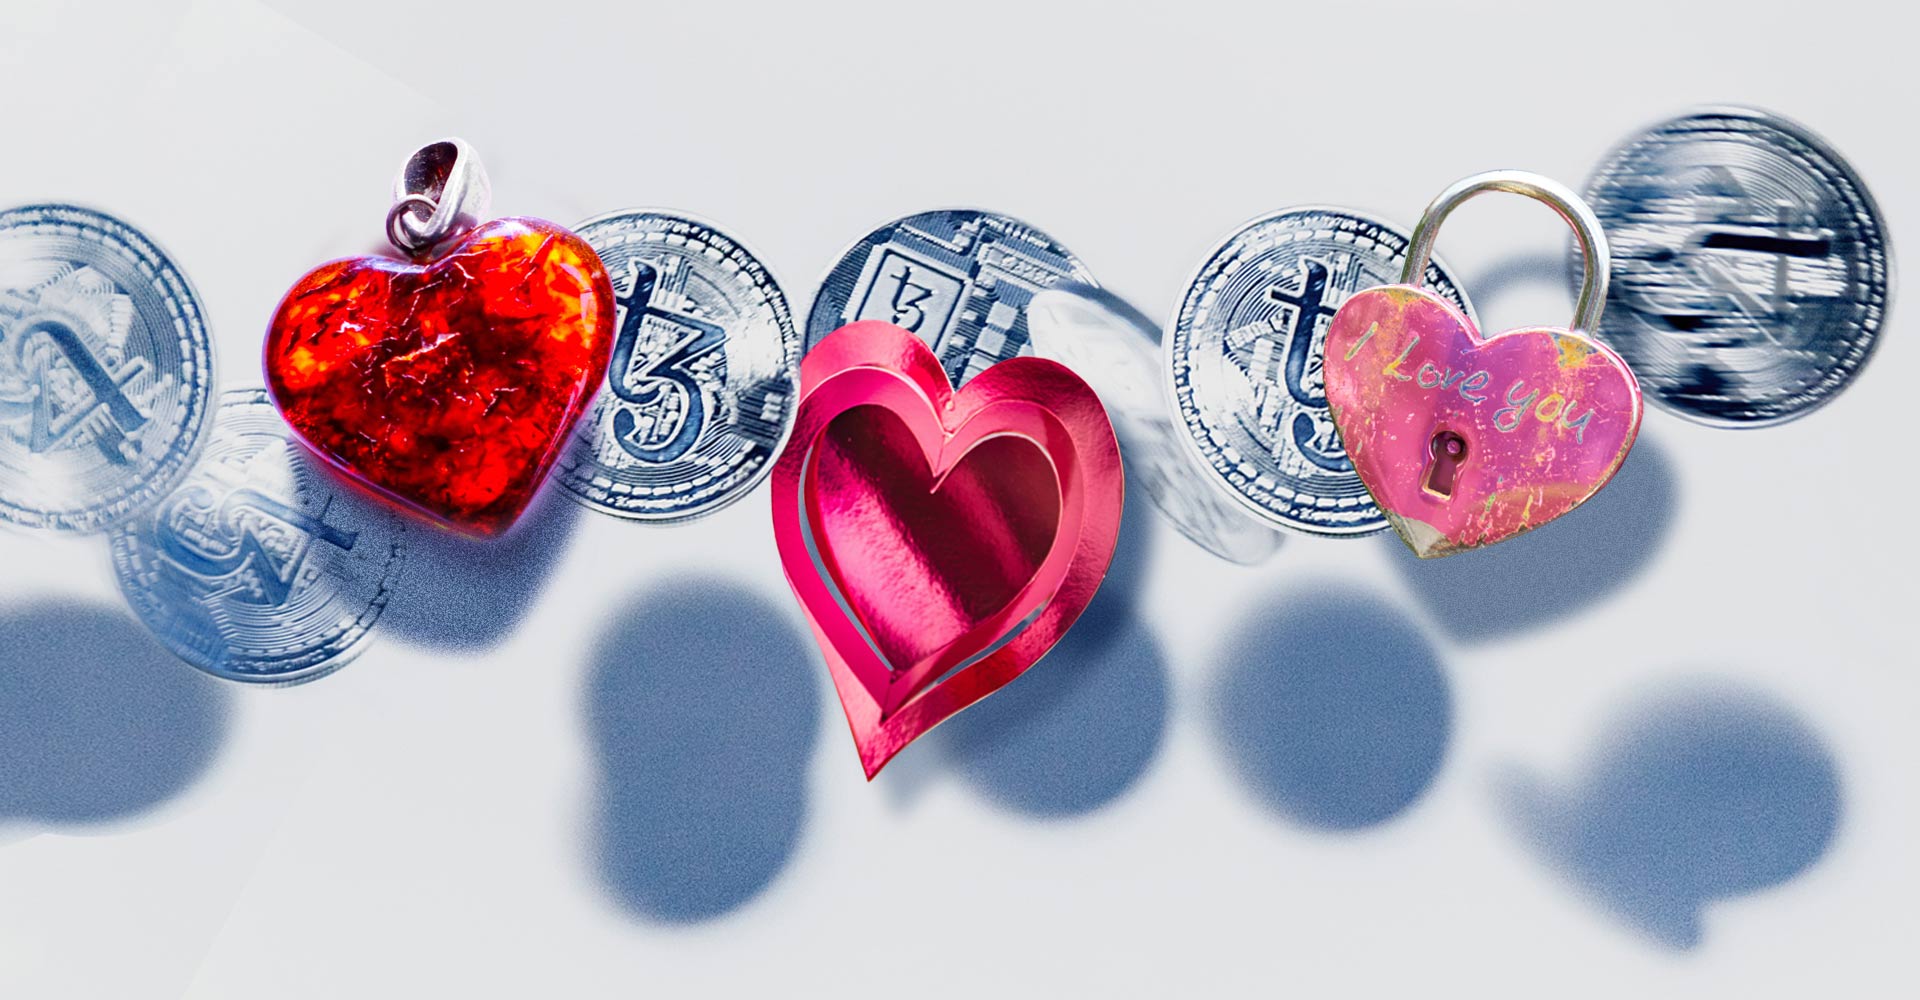 A Valentine’s warning about heartbreak hackers